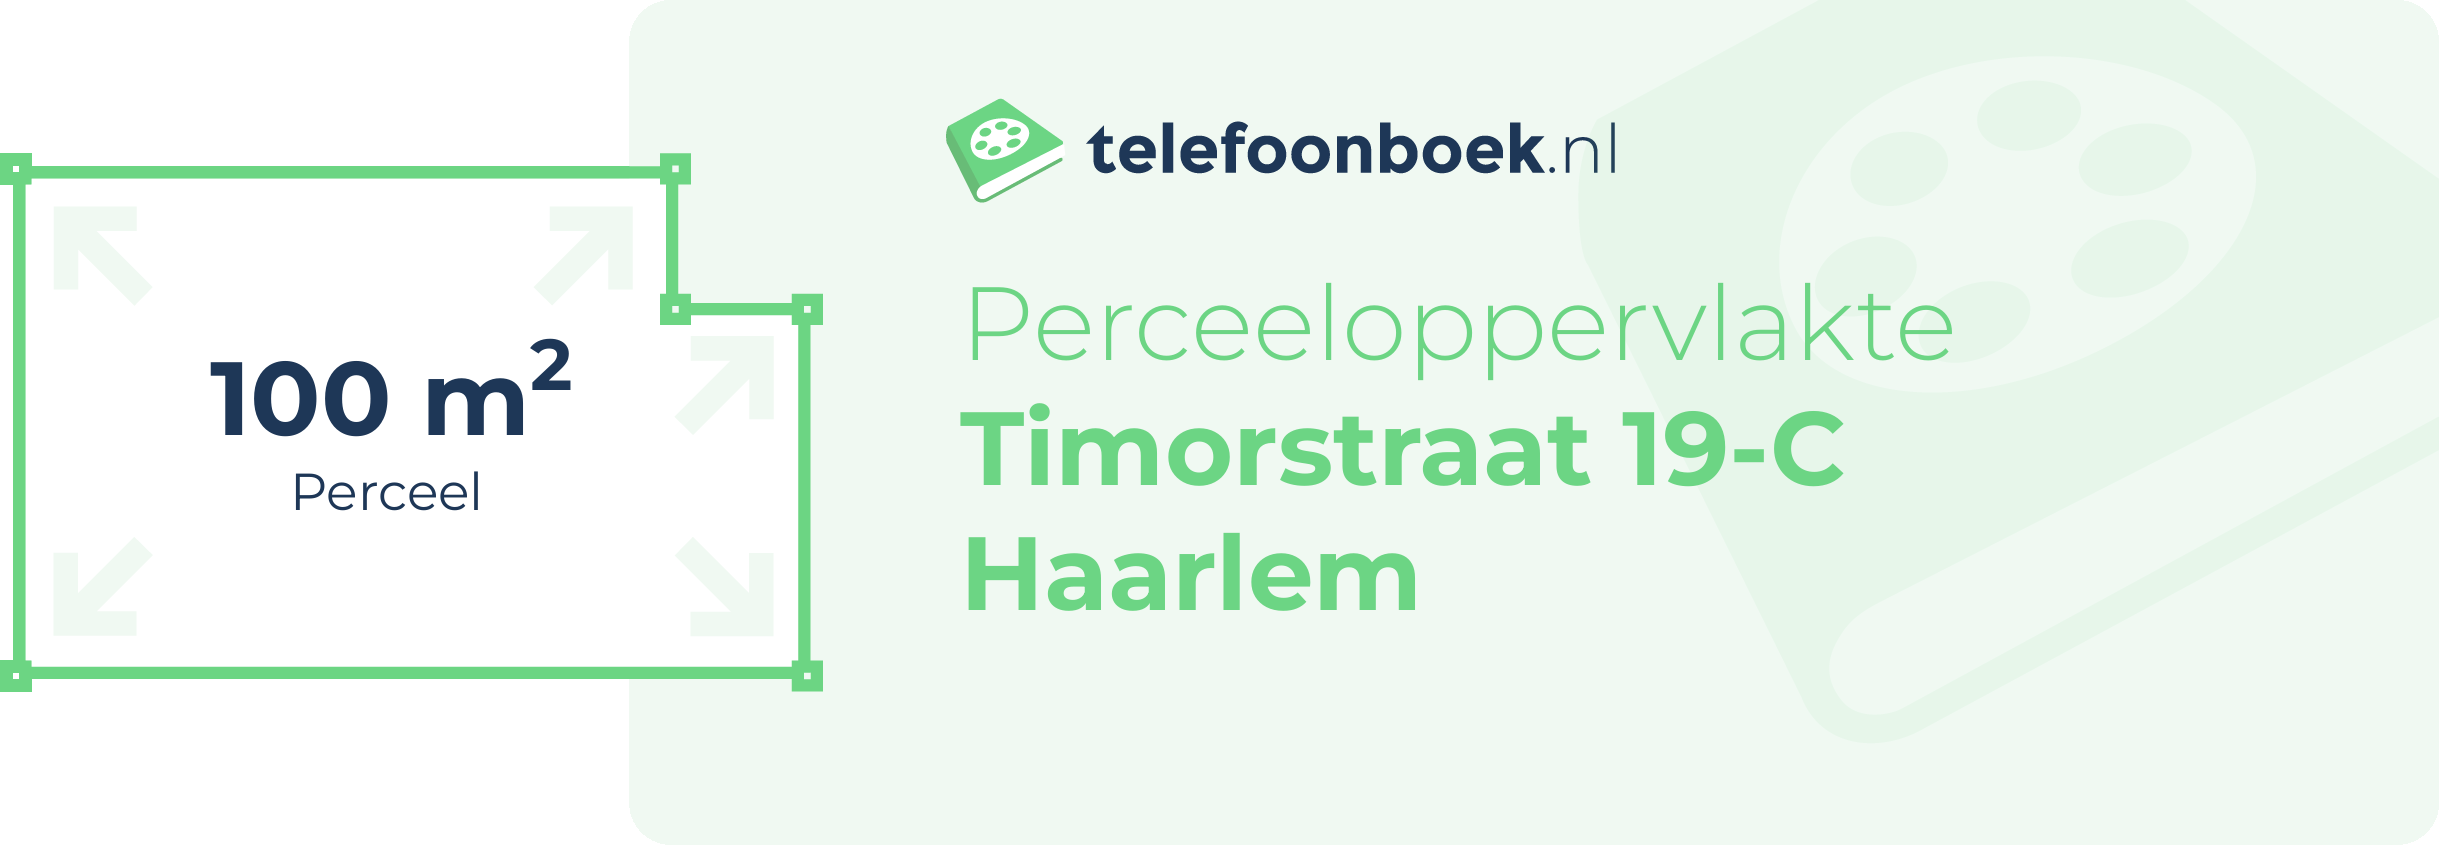 Perceeloppervlakte Timorstraat 19-C Haarlem